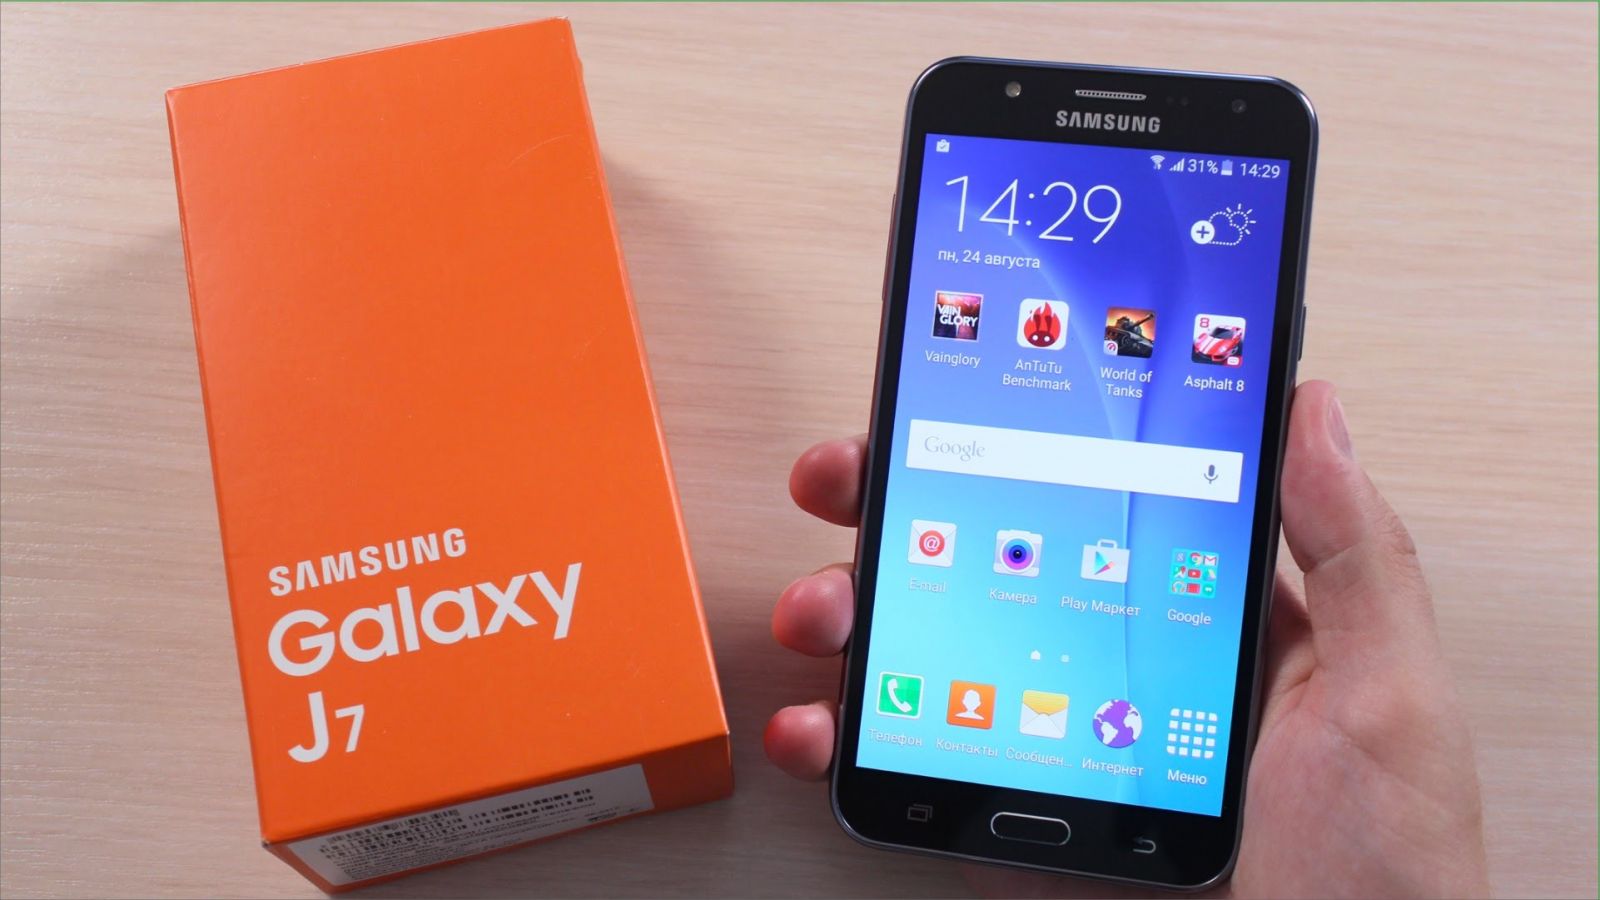 Cách kiểm tra bảo hành trên điện thoại Samsung Galaxy J7 2016 2 SIM